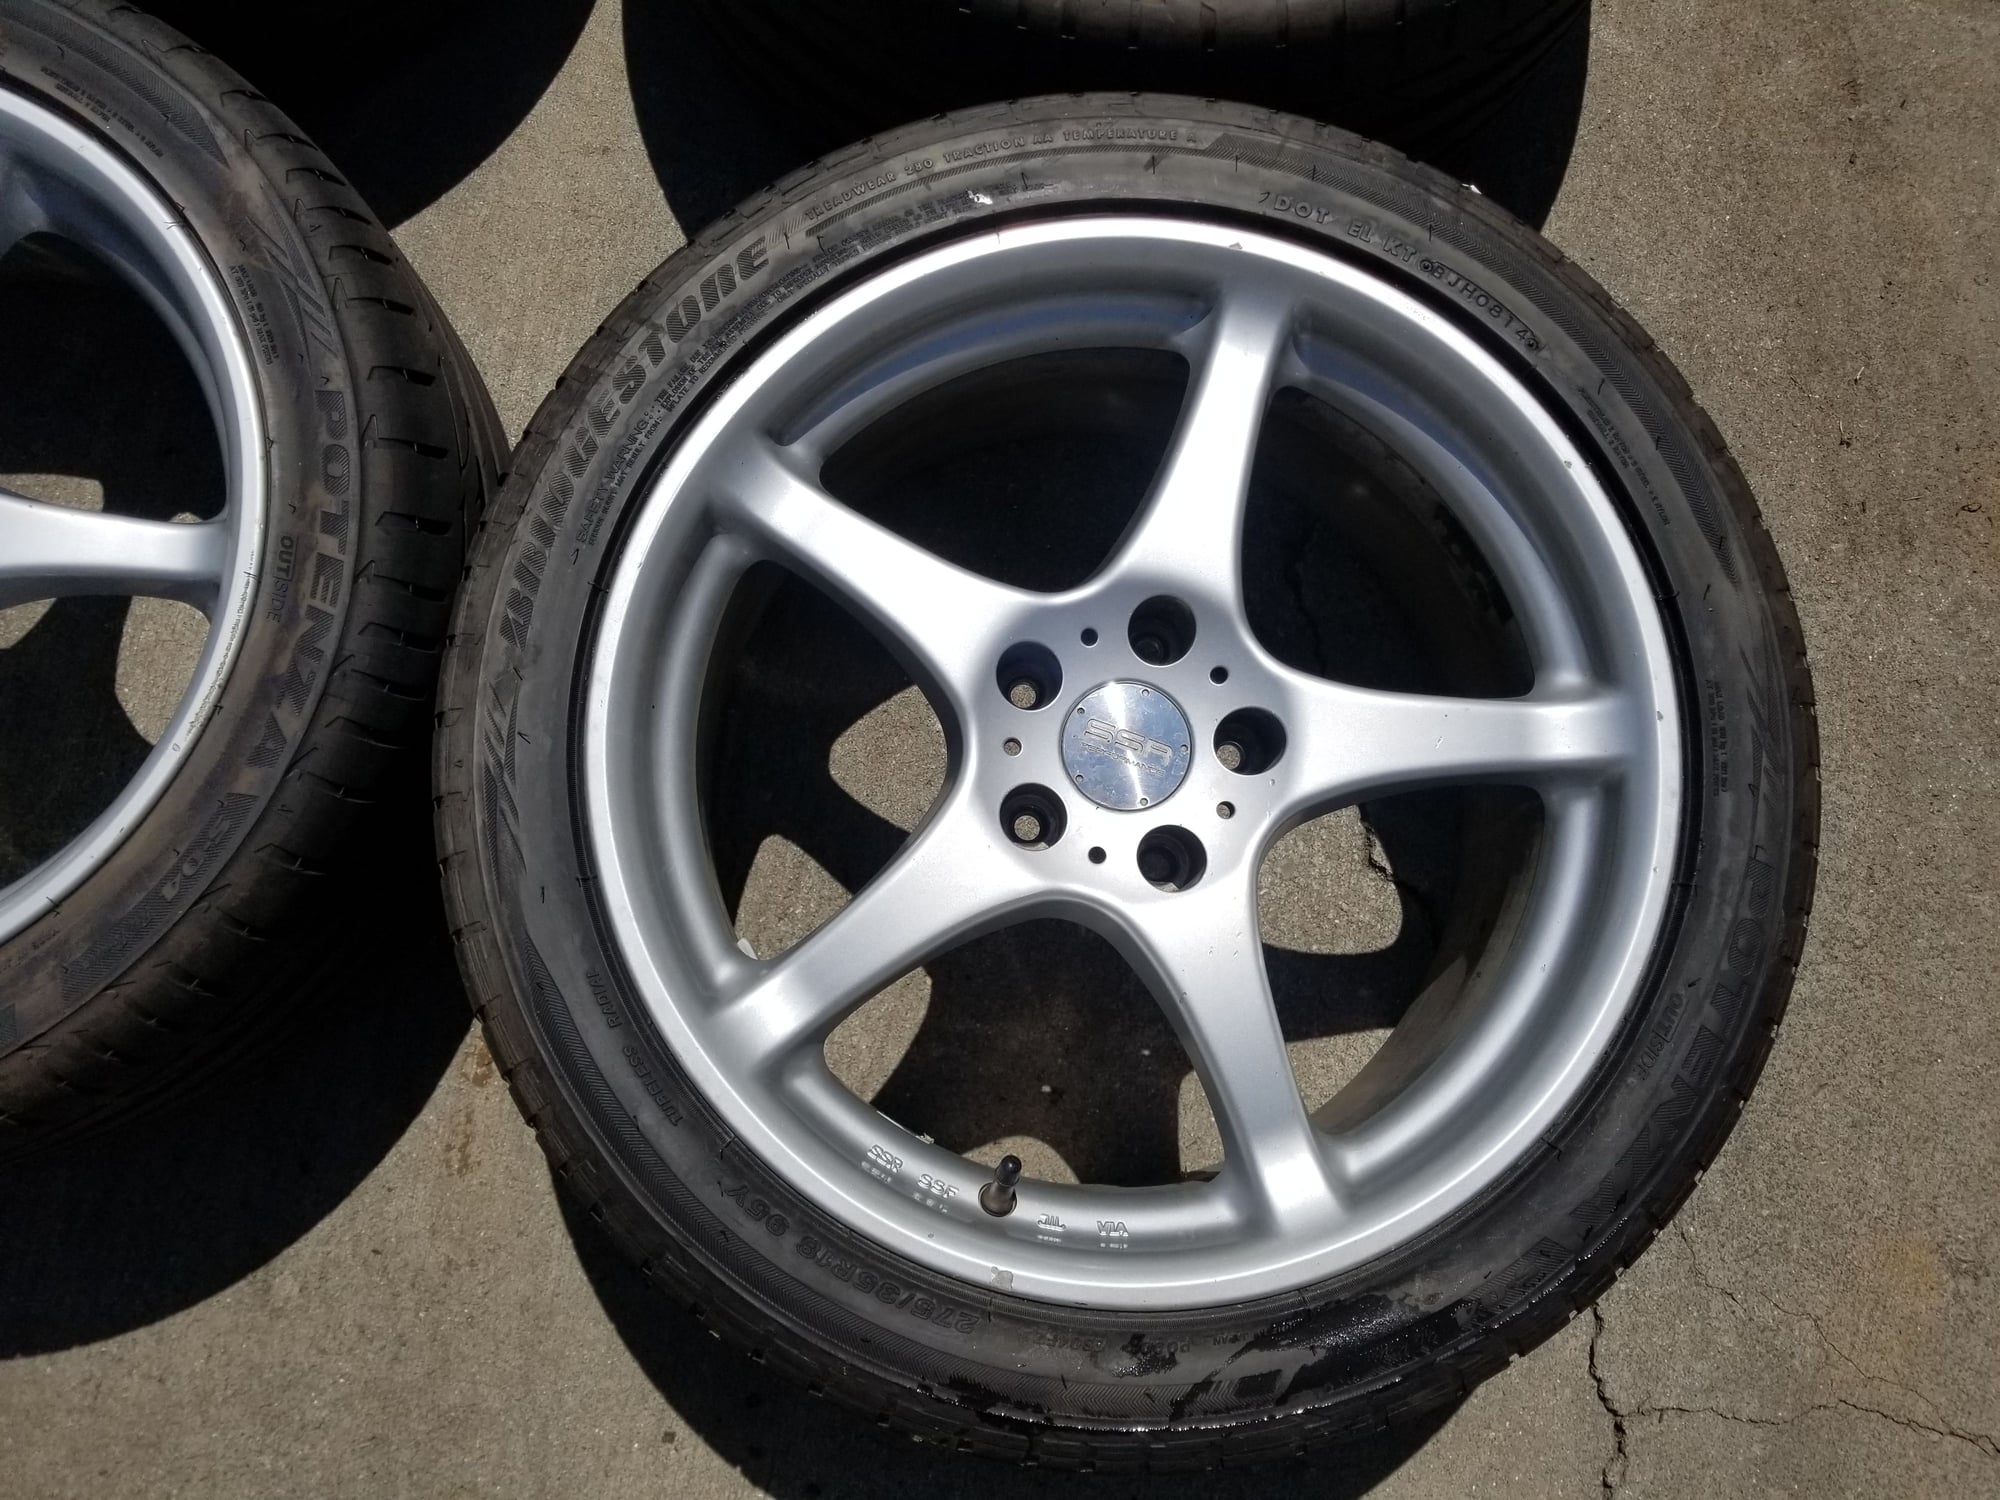 Wheels and Tires/Axles - SSR integral wheels 17x8F 18x9R w/ new Bridgestone Potenza S04 tires - Used - Morristown, TN 37814, United States